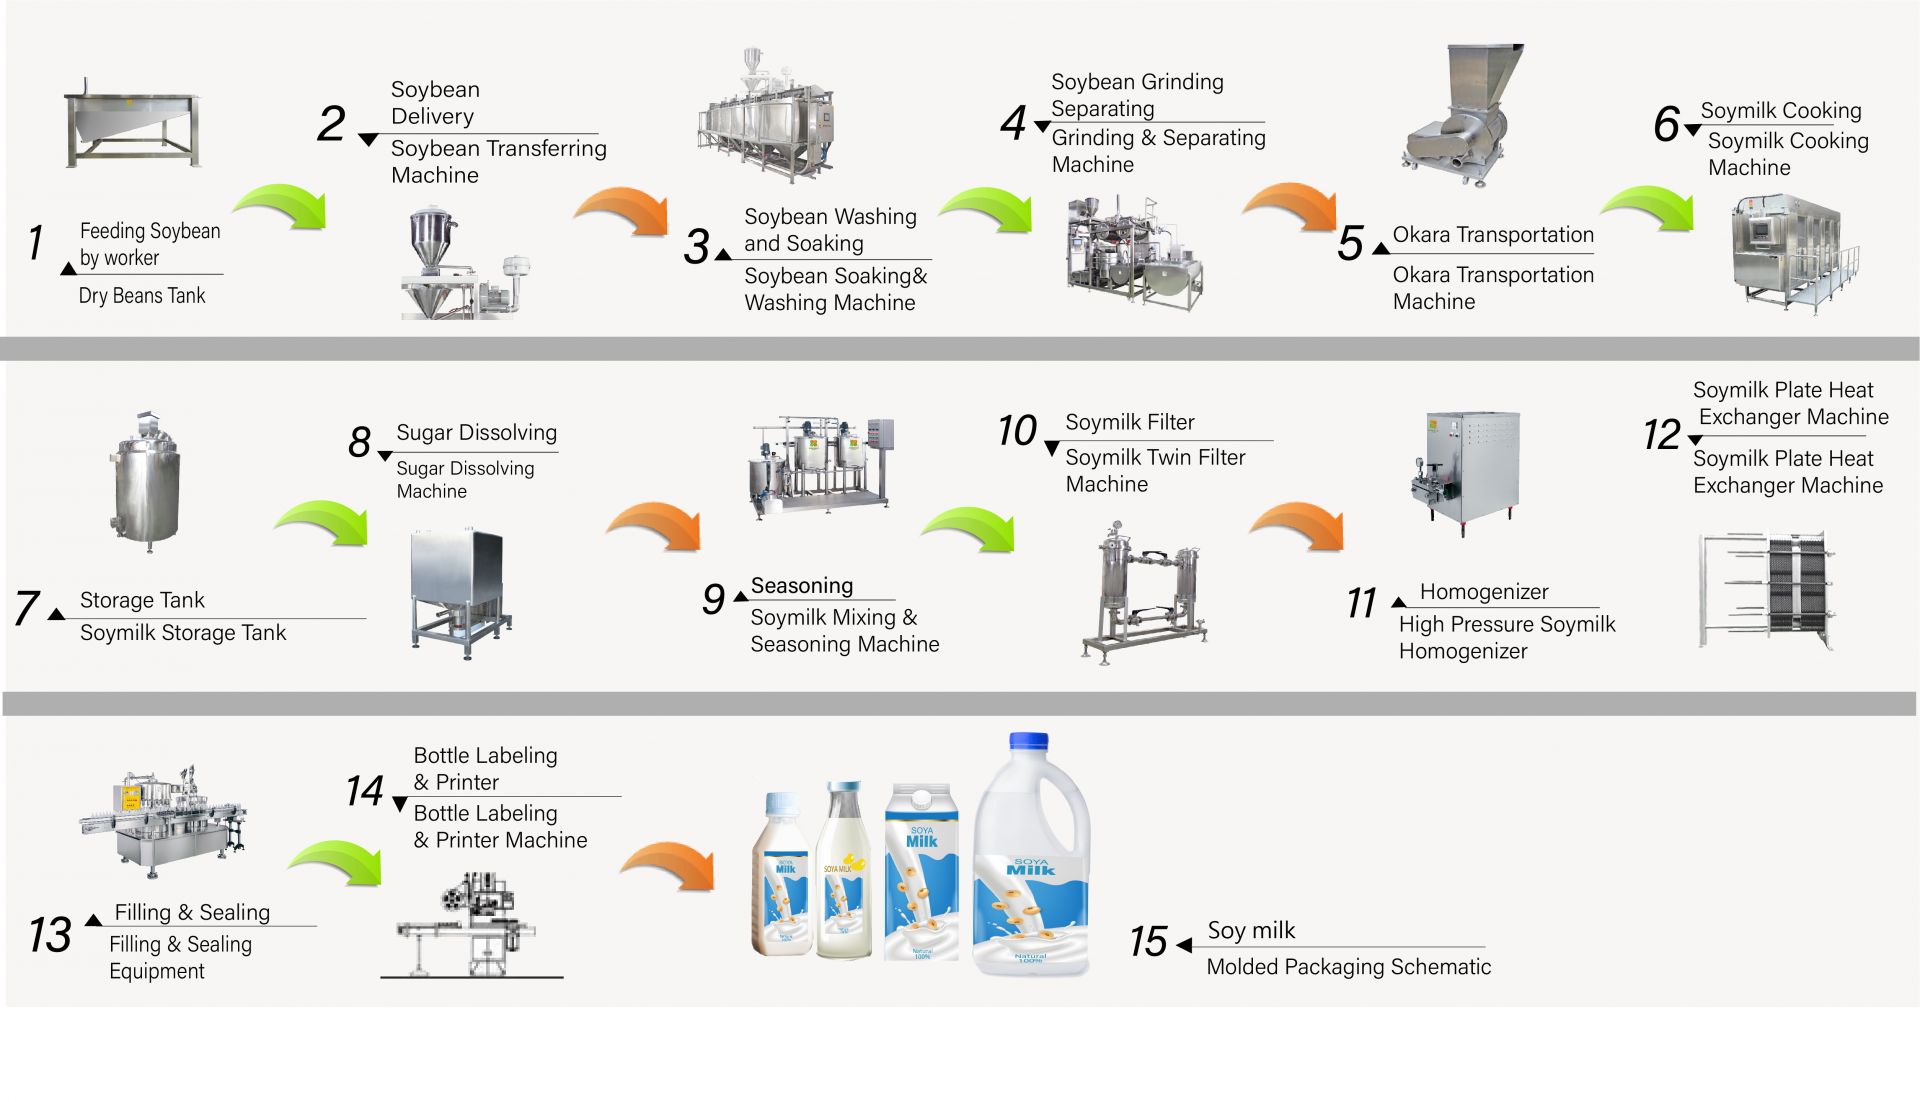 Proces výroby sójového mlieka vo fabrike, Ako vyrobiť sójové mlieko, Vyrobiť sójové mlieko, diagram toku sójového mlieka, Proces výroby sójového mlieka, Proces výroby sójového mlieka, proces výroby sójového mlieka, diagram toku procesu sójového mlieka, Tok spracovania sójového mlieka, Proces spracovania sójového mlieka, produkcia sójového mlieka, diagram toku produkcie sójového mlieka, proces výroby sójového mlieka, diagram spracovania sójových bôbov, Automatický stroj na sójové mlieko, Automatický prístroj na výrobu sójového mlieka, Jednoduchý výrobník tofu, Priemyselná výroba sójového mlieka, Priemyselná výroba sójového mlieka, Priemyselný stroj na sójové mlieko, Priemyselný tofu stroj, stroj na výrobu rastlinného mlieka, Stroj na výrobu rastlinného mlieka, výroba sójového mlieka, Stroj na výrobu sójových nápojov, Výrobná linka na výrobu sójových nápojov, Stroj na výrobu sójového nápoja, komerčný stroj na výrobu sójového mlieka a tofu, stroj na výrobu sójového mlieka a tofu, Stroje a zariadenia na výrobu sójových nápojov, Stroj na varenie sójového mlieka, továreň na sójové mlieko, stroj na sójové mlieko, komerčný stroj na sójové mlieko, Stroj na sójové mlieko vyrobený na Taiwane, Stroje na sójové mlieko, Stroje a zariadenia na sójové mlieko, Výrobcovia sójového mlieka, Výroba sójového mlieka, výrobné zariadenia na sójové mlieko, továreň na výrobu sójového mlieka, výrobná linka na sójové mlieko, cena stroja na výrobu sójového mlieka, stroj na spracovanie sójových bôbov, továreň na sójové mlieko, stroj na sójové mlieko